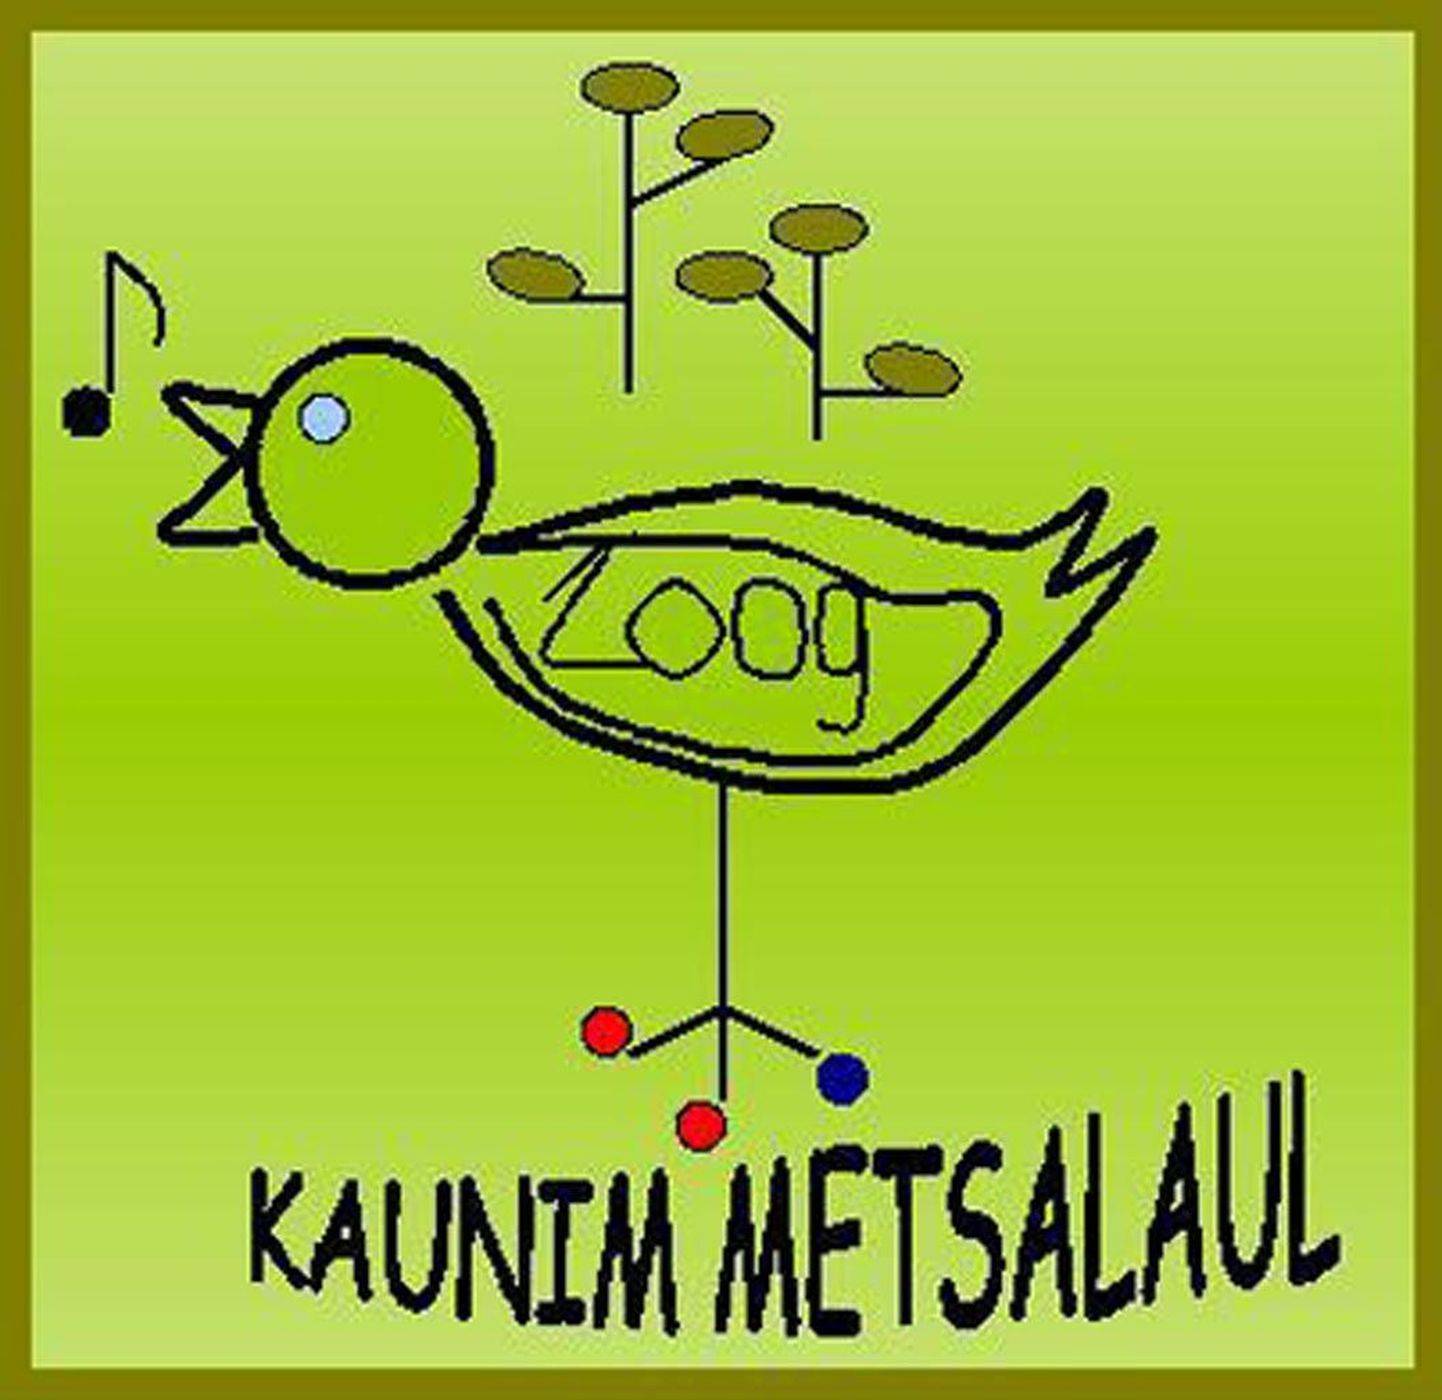 Laulukonkursi "Kauneim metsalaul" logo.